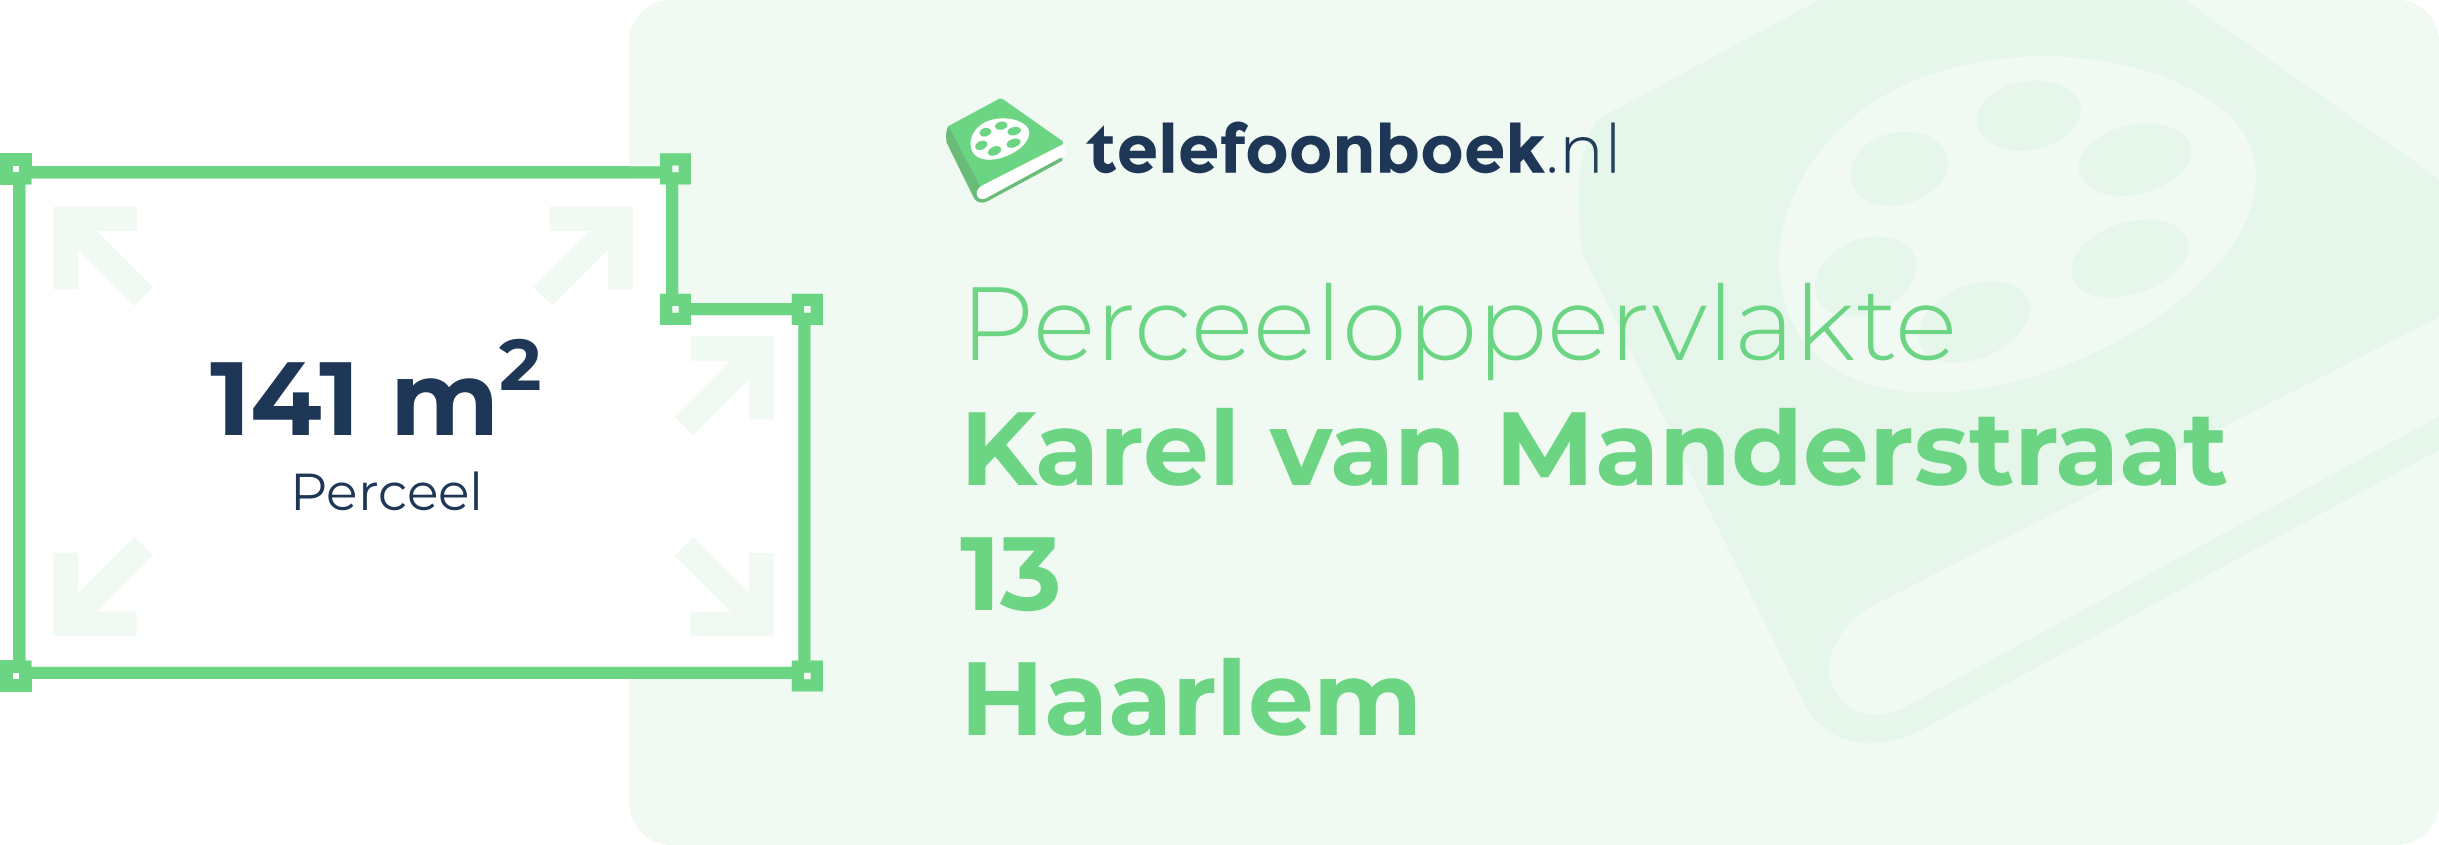 Perceeloppervlakte Karel Van Manderstraat 13 Haarlem